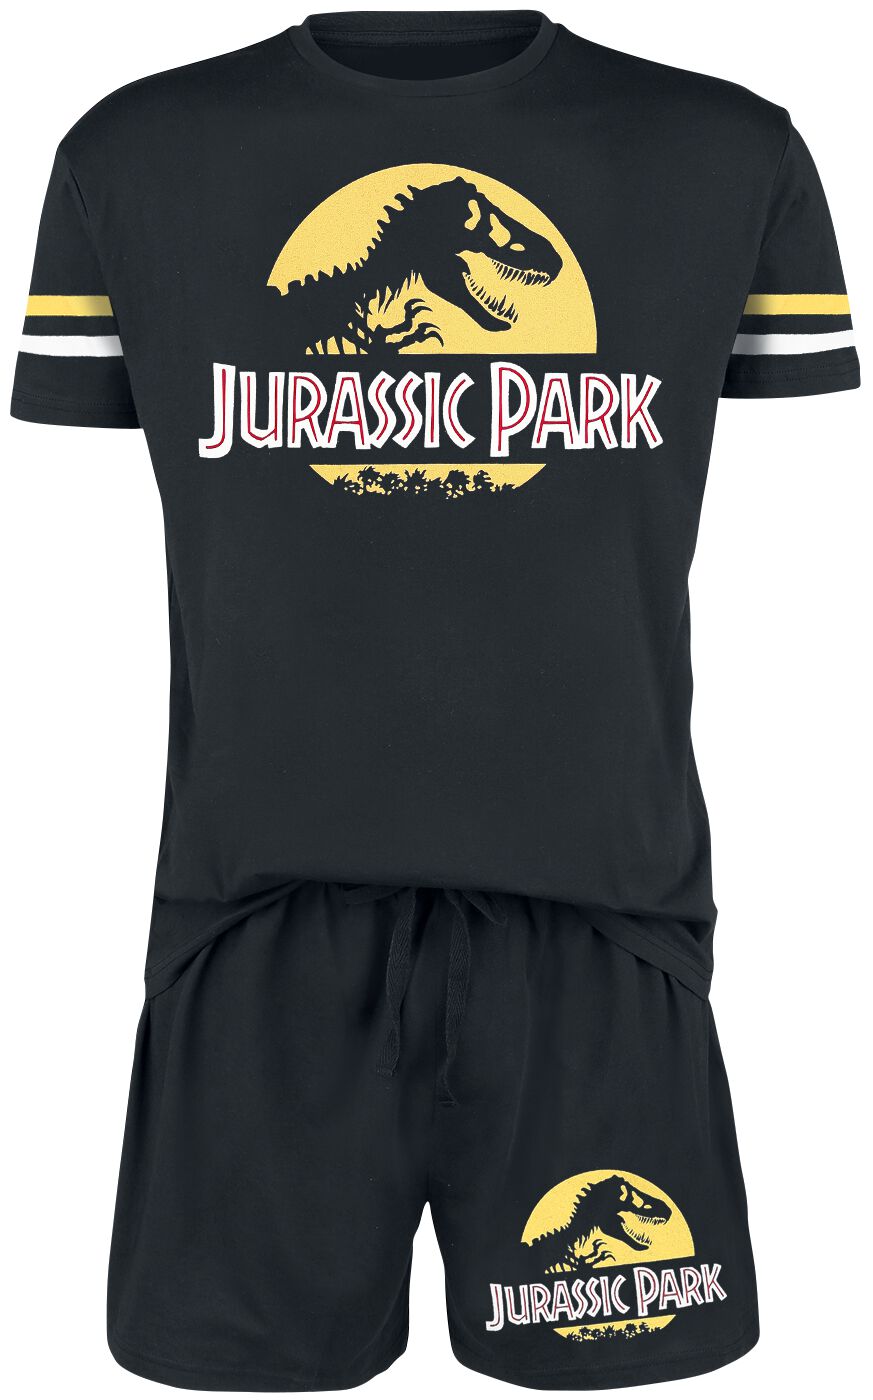 Jurassic Park Schlafanzug - Logo - S bis 3XL - für Männer - Größe L - schwarz  - EMP exklusives Merchandise!